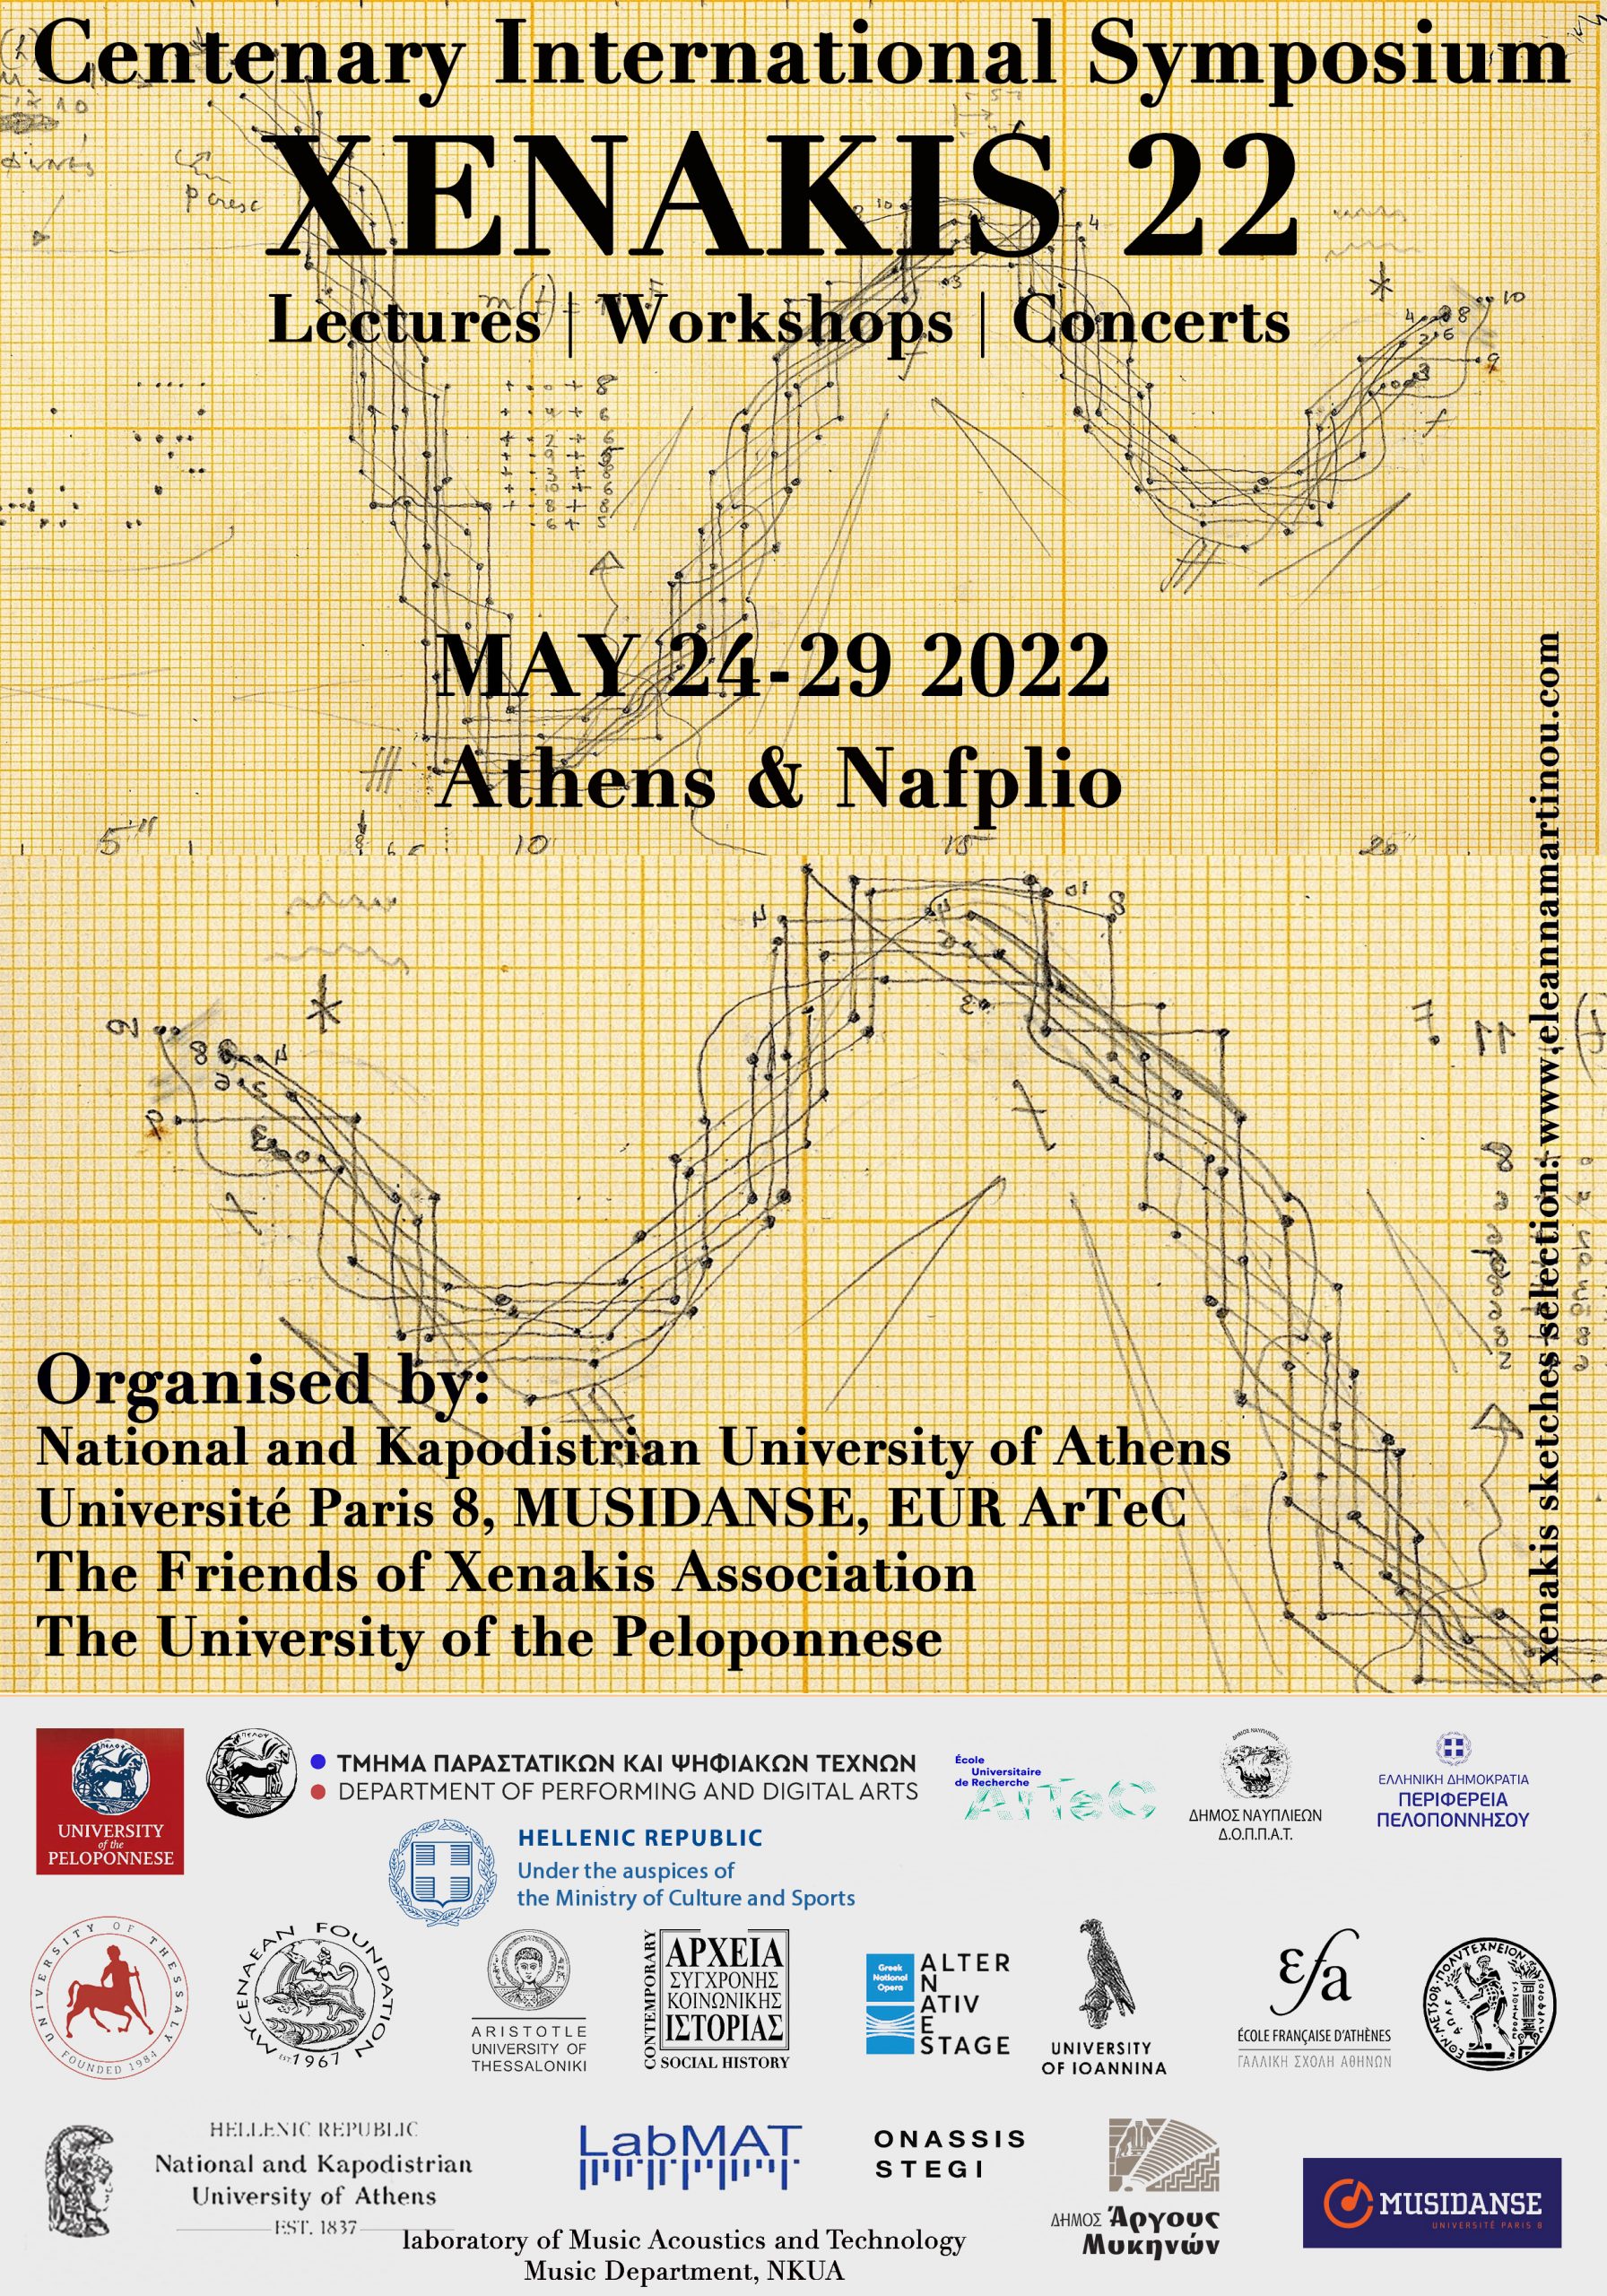 3.Αφίσα για το Xenakis 22 Centenary International Symposium scaled